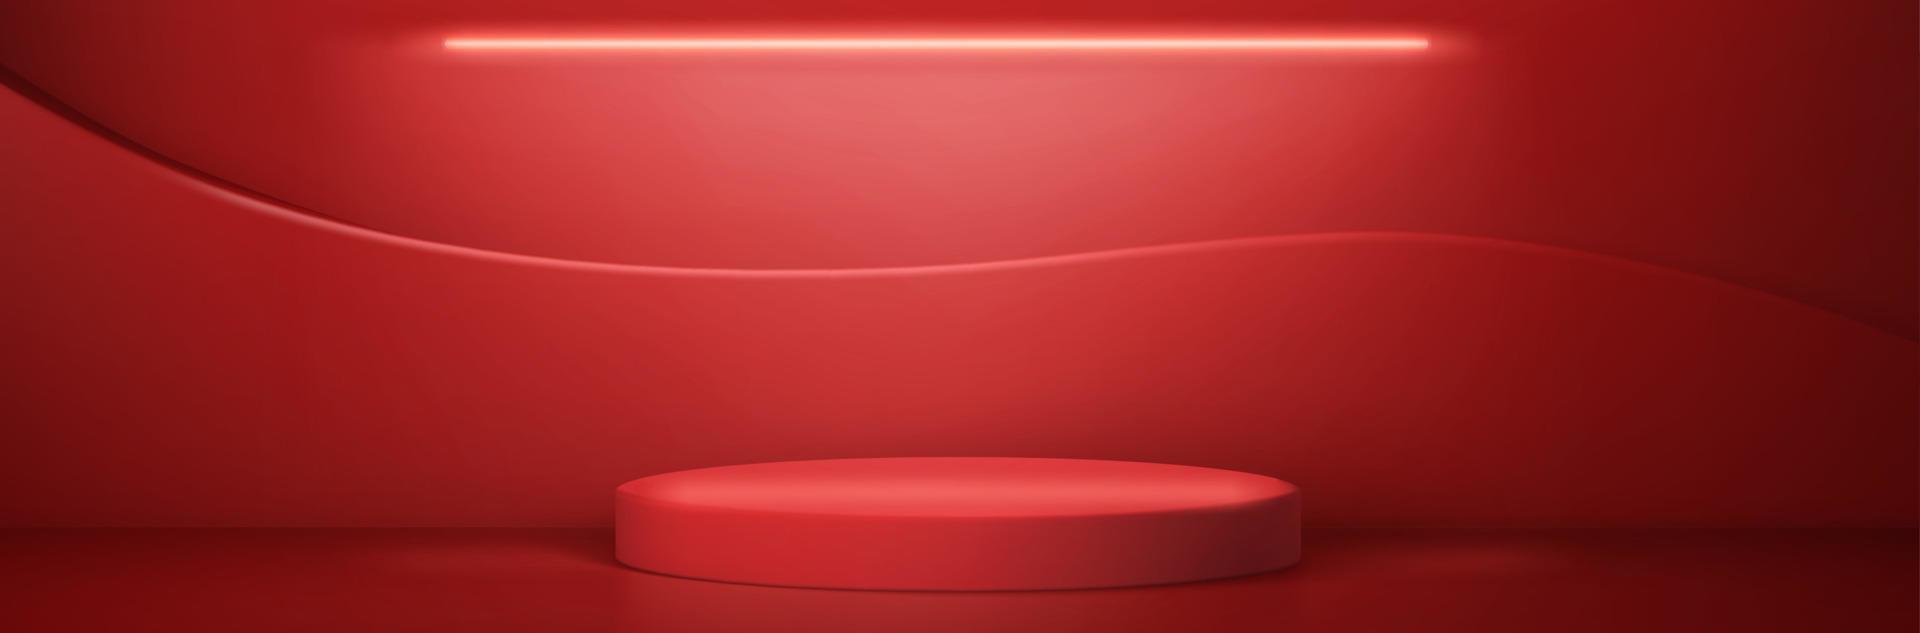 podium rond rouge, plate-forme ou scène vecteur